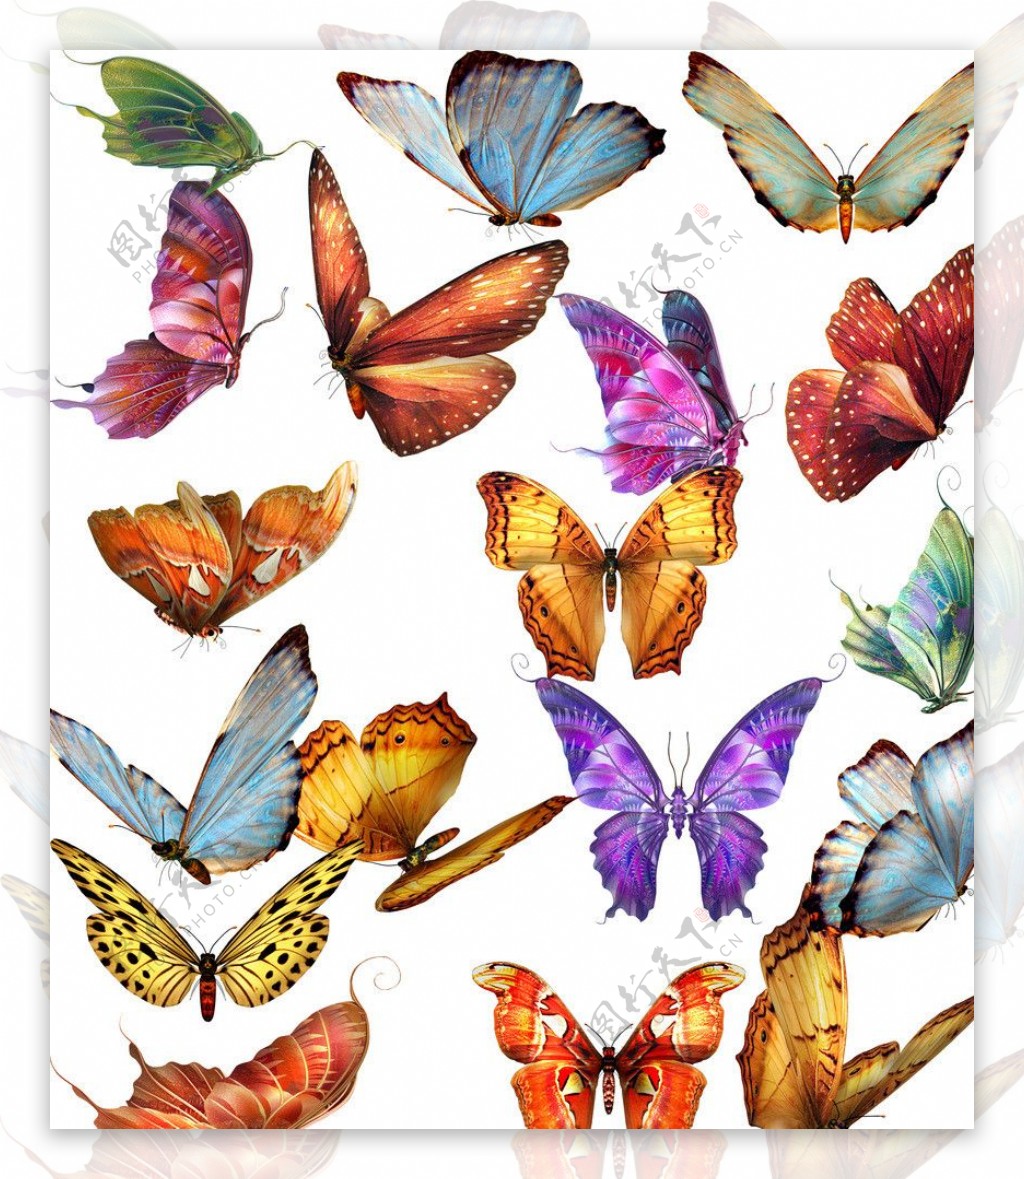 漂亮的蝴蝶高清桌面壁纸大全-壁纸图片大全